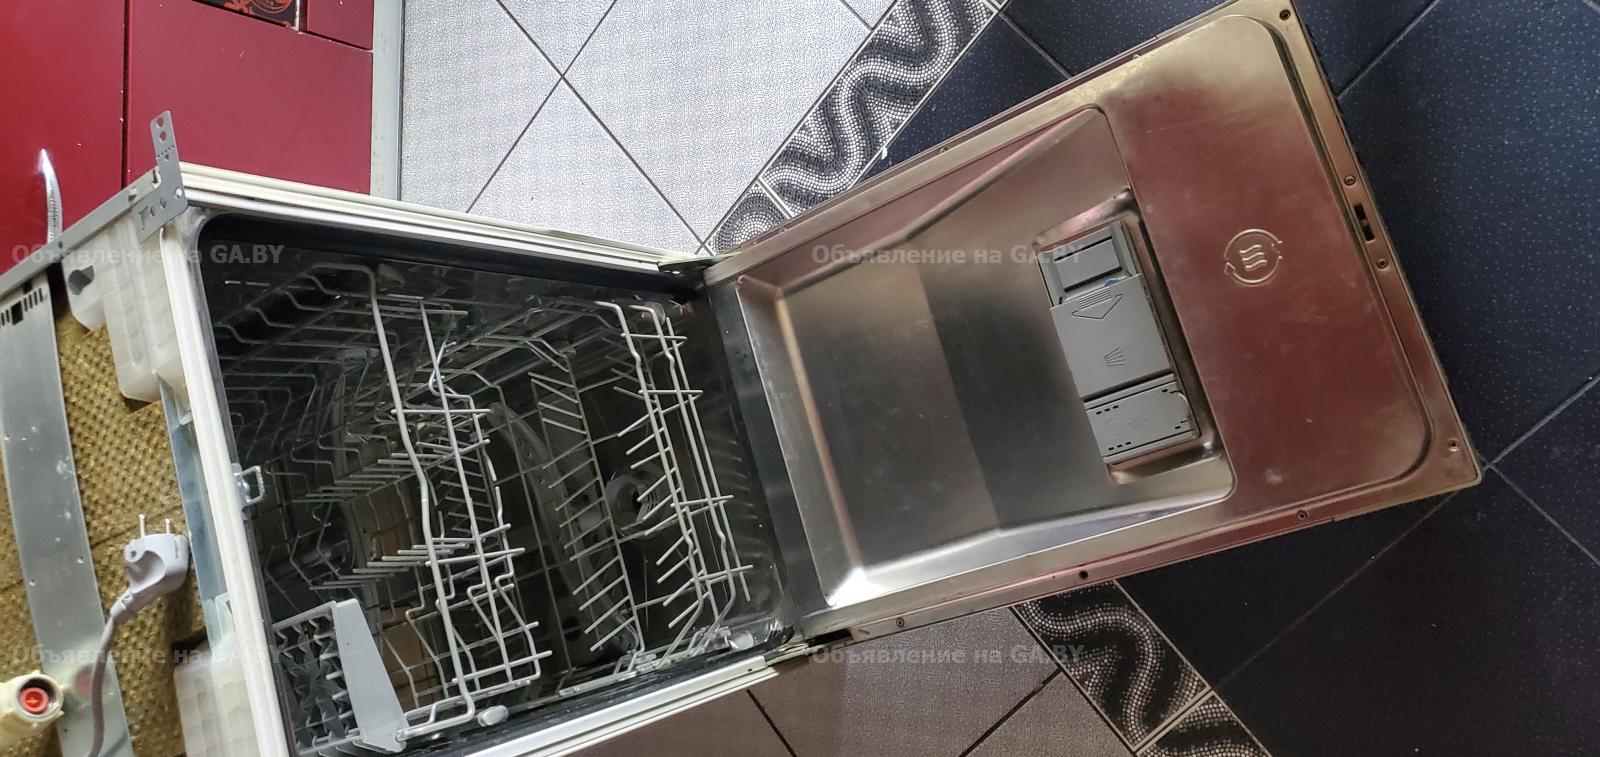 Продам Продам посудомоечную машину. - GA.BY